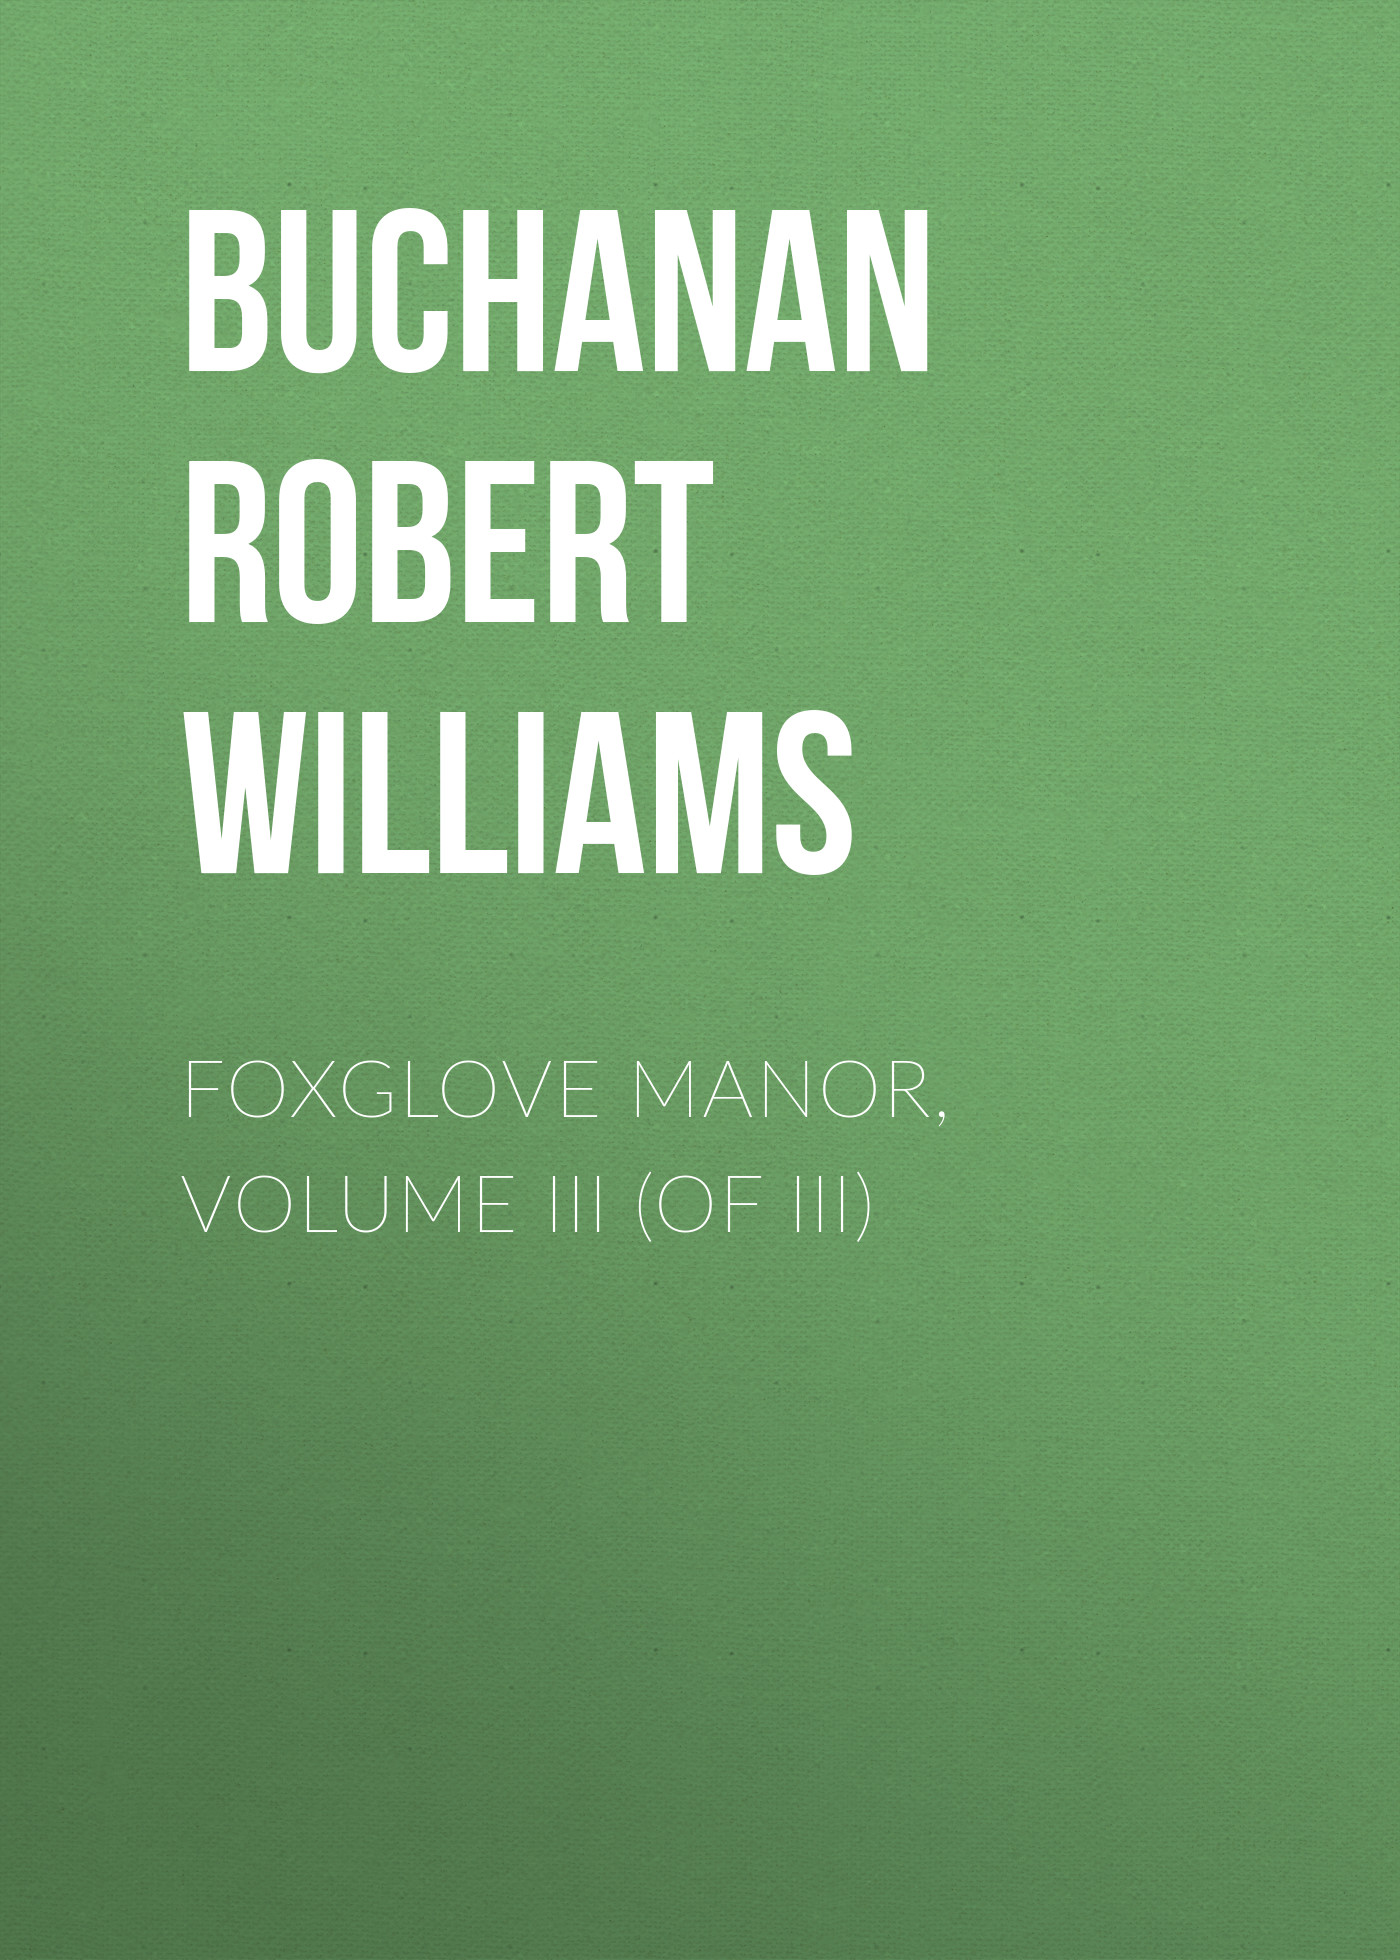 Книга Foxglove Manor, Volume III (of III) из серии , созданная Robert Buchanan, может относится к жанру Зарубежная старинная литература, Зарубежная классика. Стоимость электронной книги Foxglove Manor, Volume III (of III) с идентификатором 24180428 составляет 0 руб.